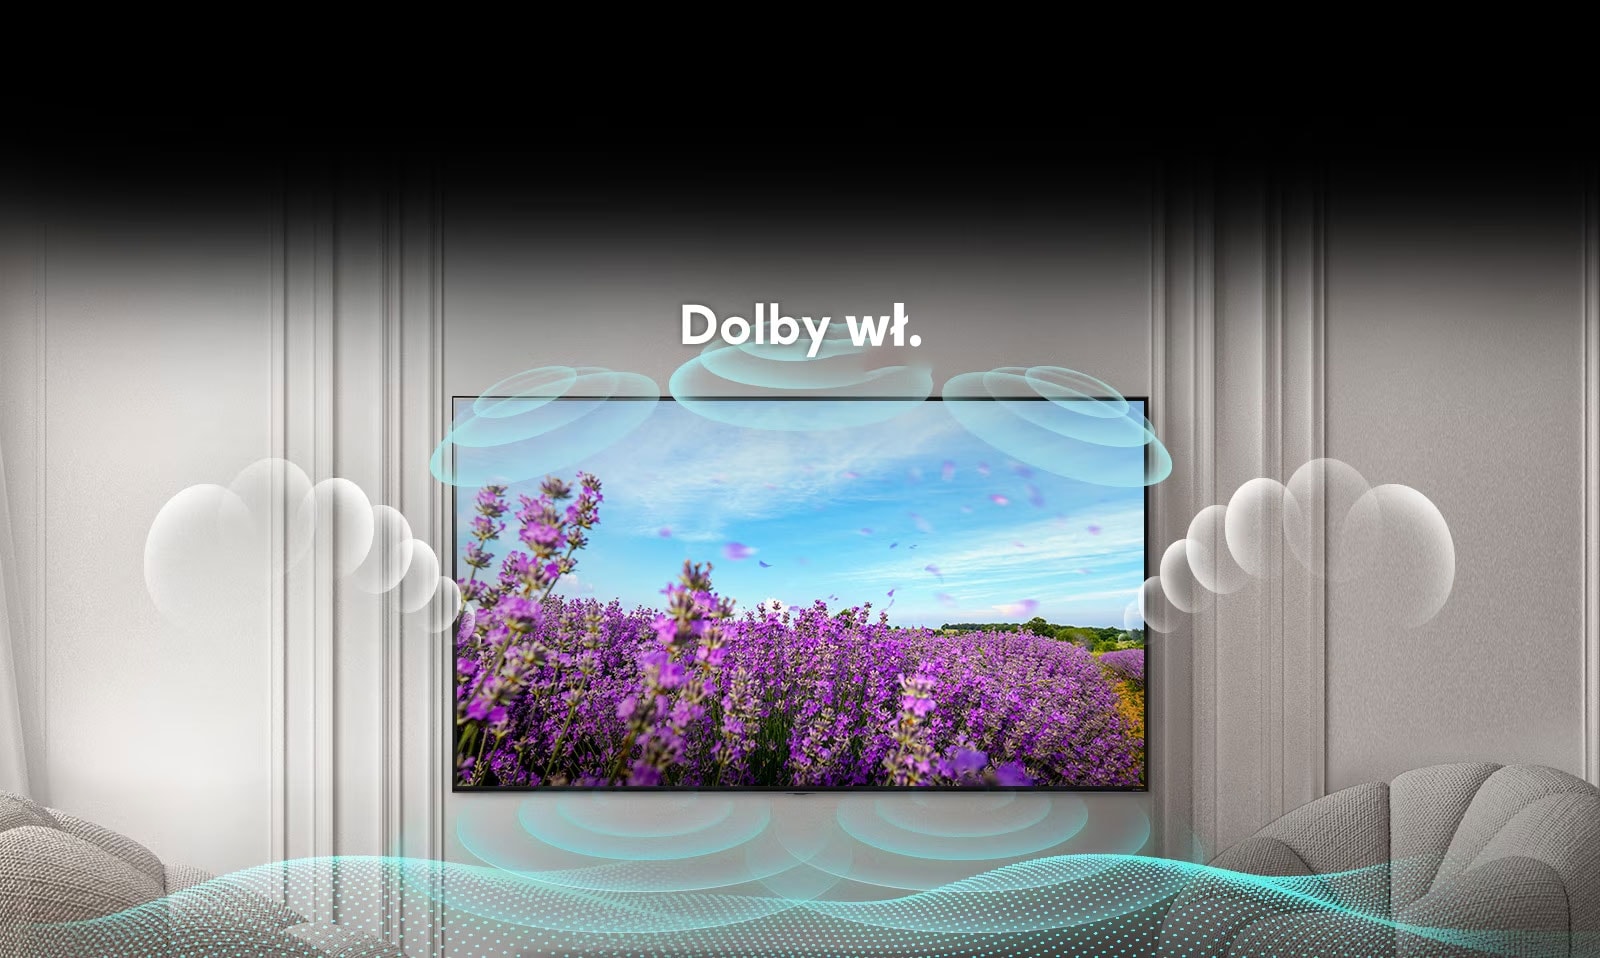 Ekran telewizora QNED przedstawia pole różowych kwiatów rzepaku letnią porą. Na środku widnieje napis Dolby OFF. Obraz w ekranie staje się jaśniejszy i tekst zmienia się na Dolby ON.